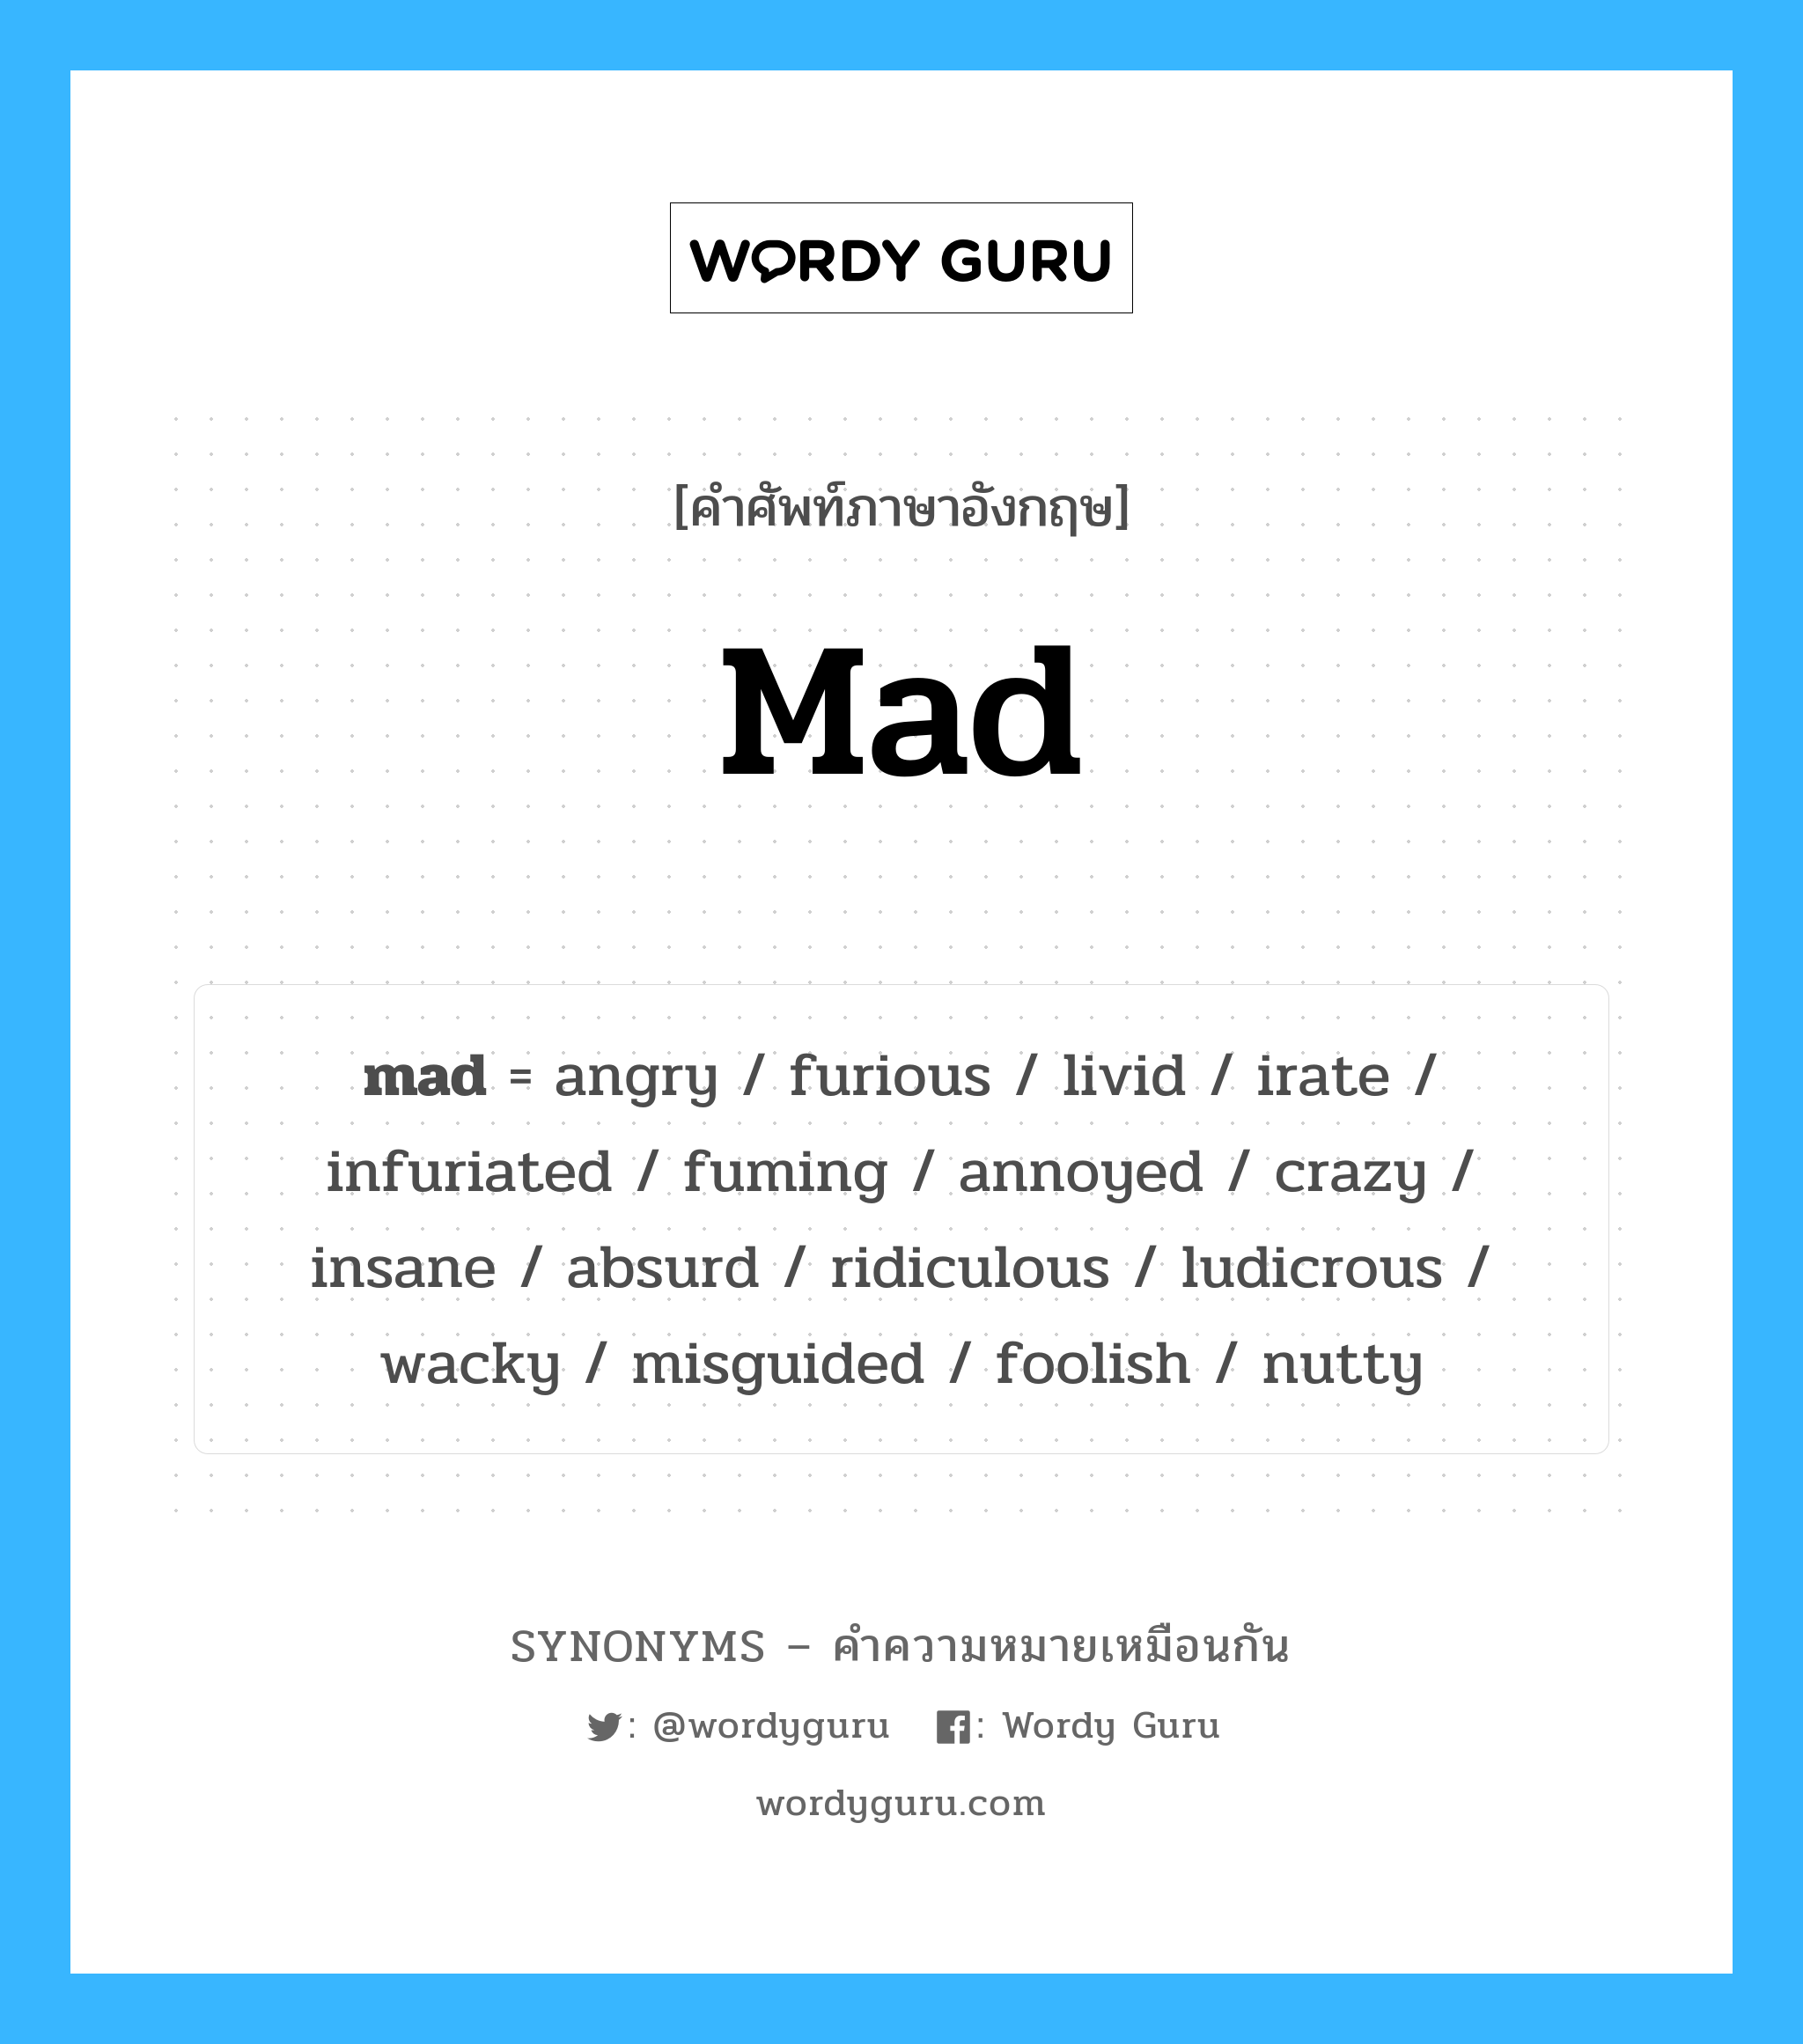 irate เป็นหนึ่งใน mad และมีคำอื่น ๆ อีกดังนี้, คำศัพท์ภาษาอังกฤษ irate ความหมายคล้ายกันกับ mad แปลว่า irate หมวด mad